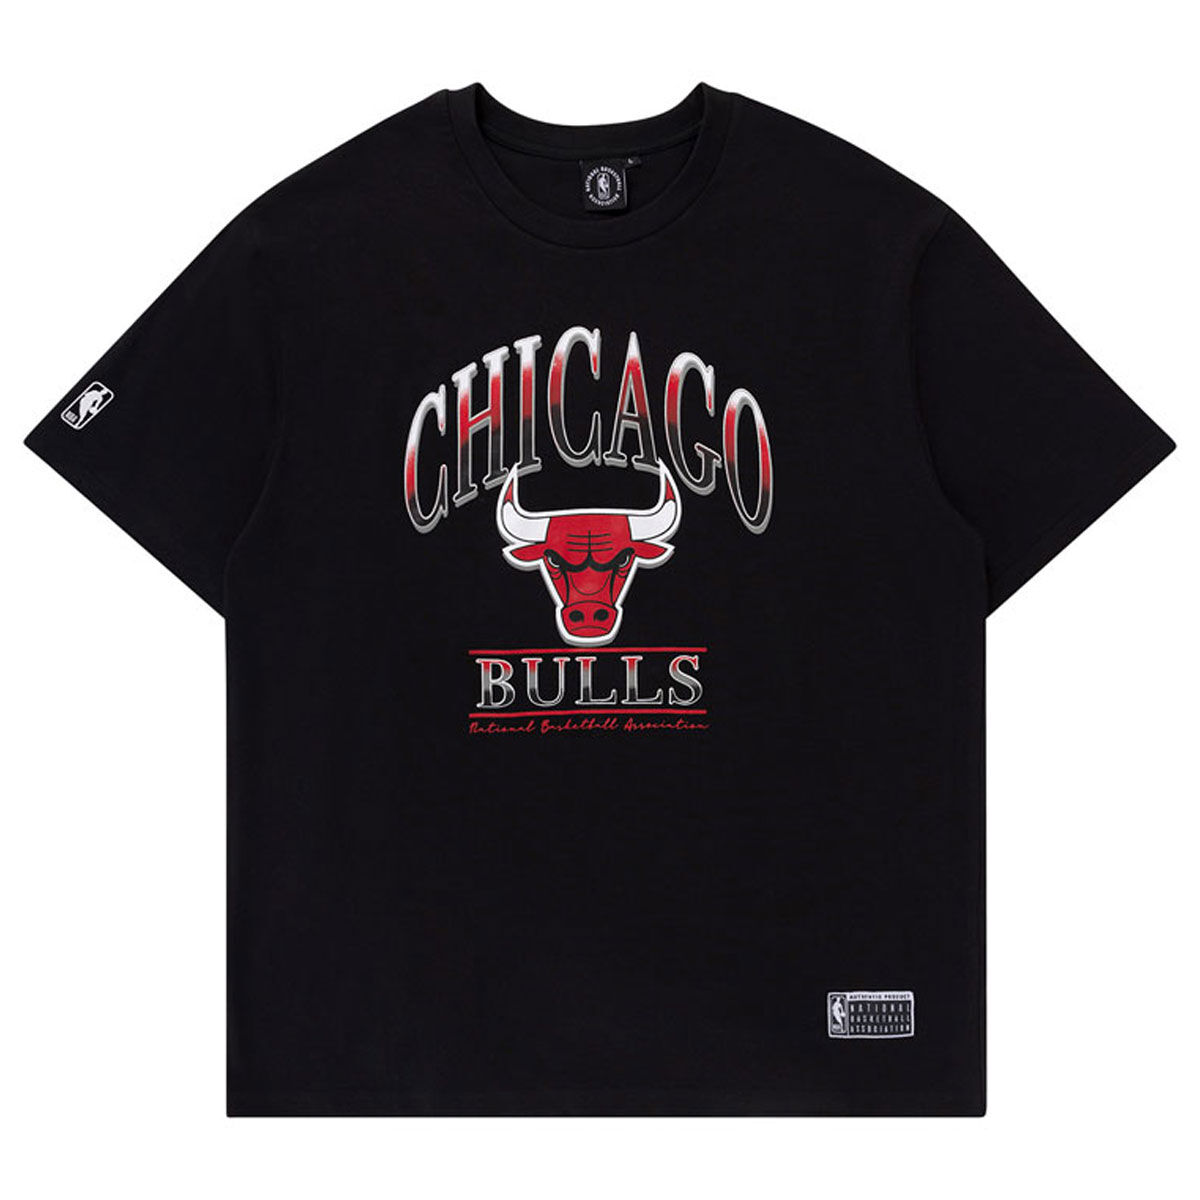 Chicago Bulls Athens Vintage Tee Black S, Black, rebel_hi-res